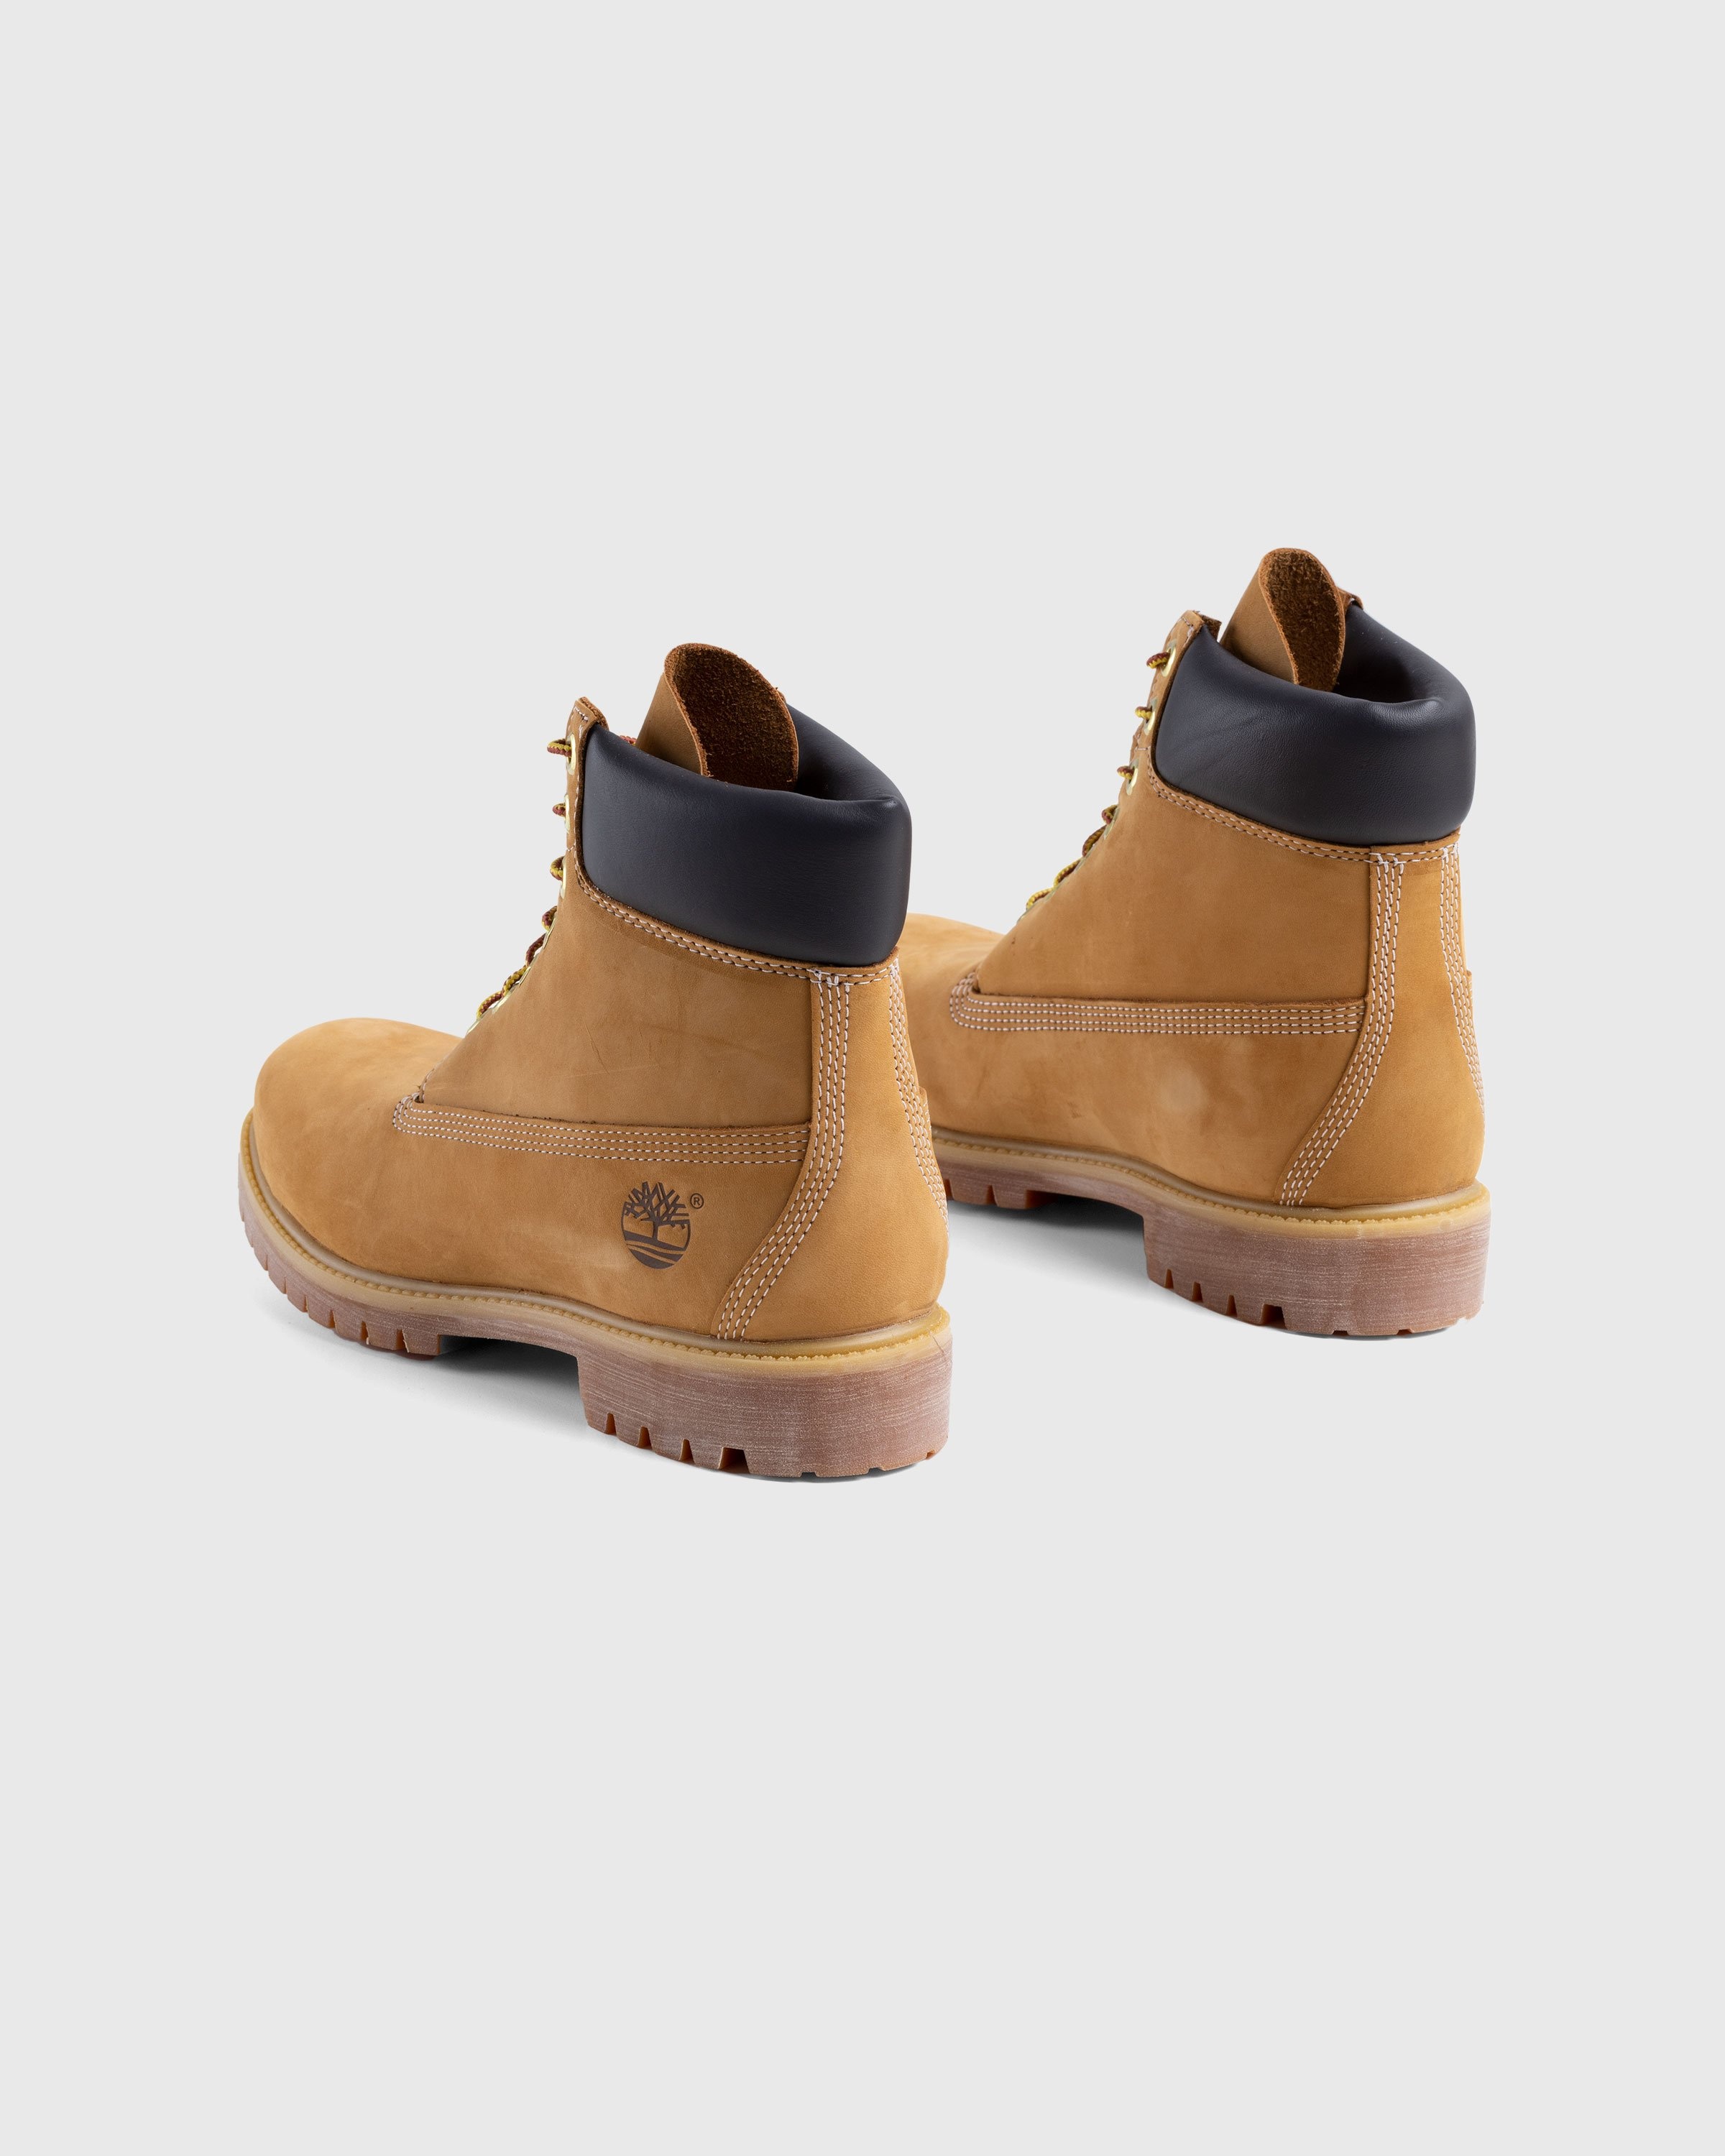 Timberland – 6 Inch Premium Boot Yellow - Boots - Yellow - Image 2